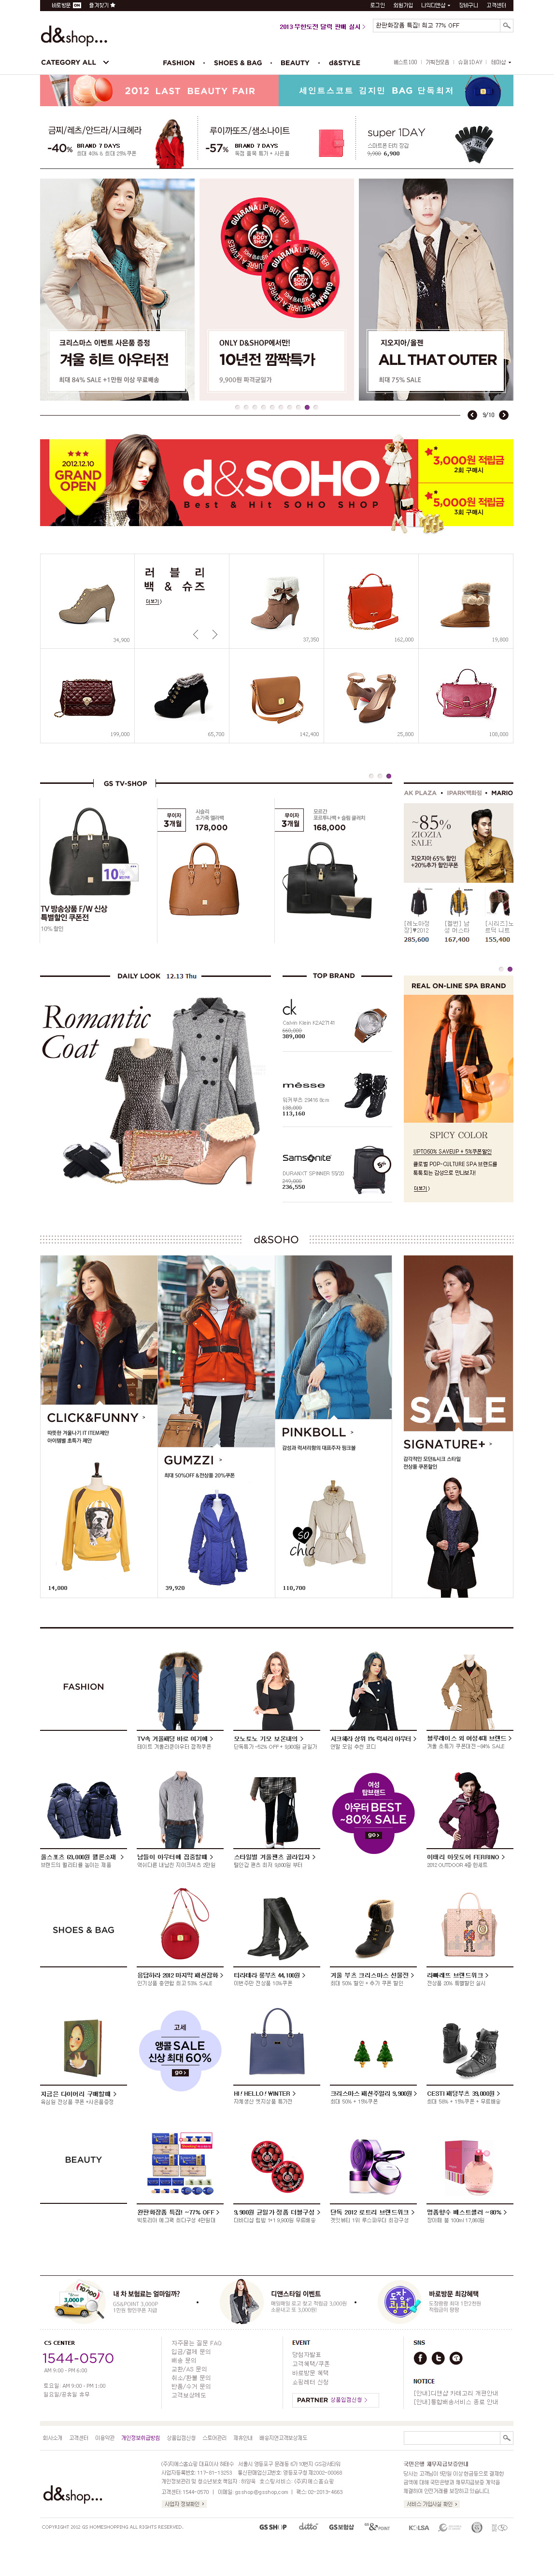 d&shop... GS SHOP旗下女性购物网站